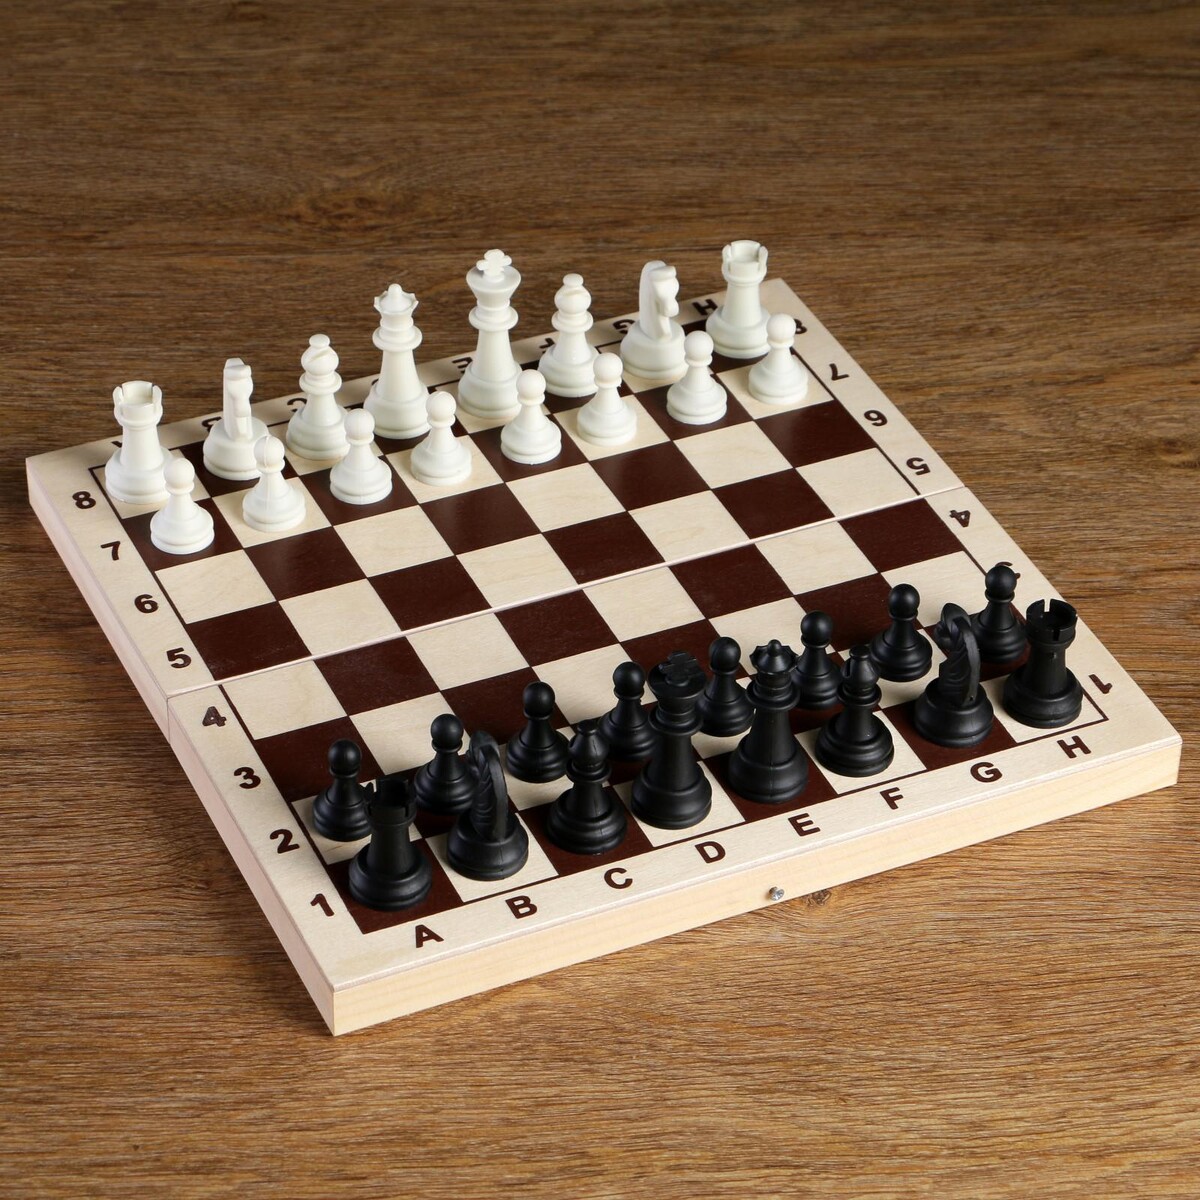 Шахматные фигуры, король h-6.2 см, пешка h-3.2 см, черно-белые шахматные фигуры гроссмейстерские